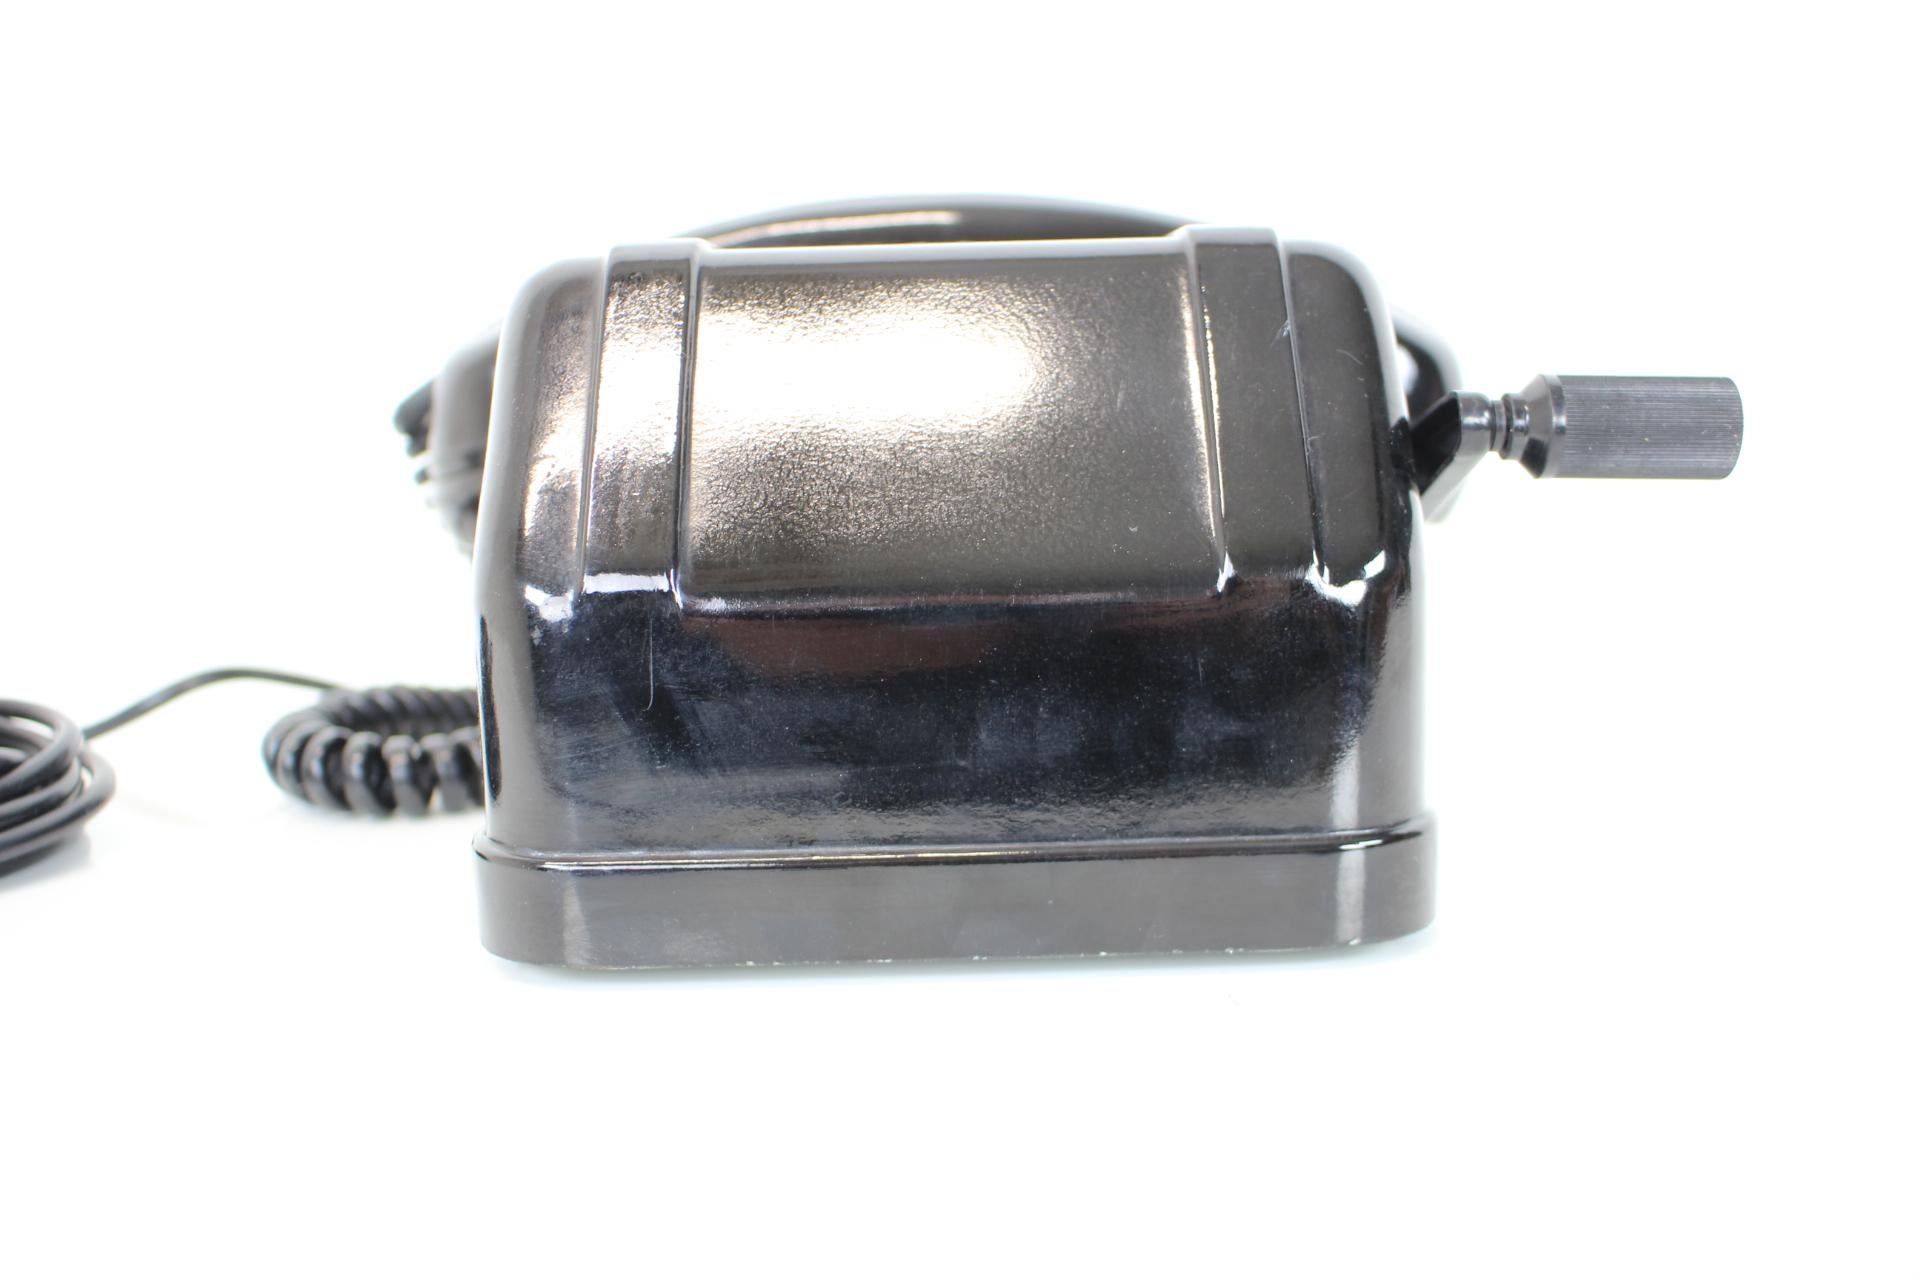 Czech Mid-Century Functional Tesla Phone 1968, Československo For Sale